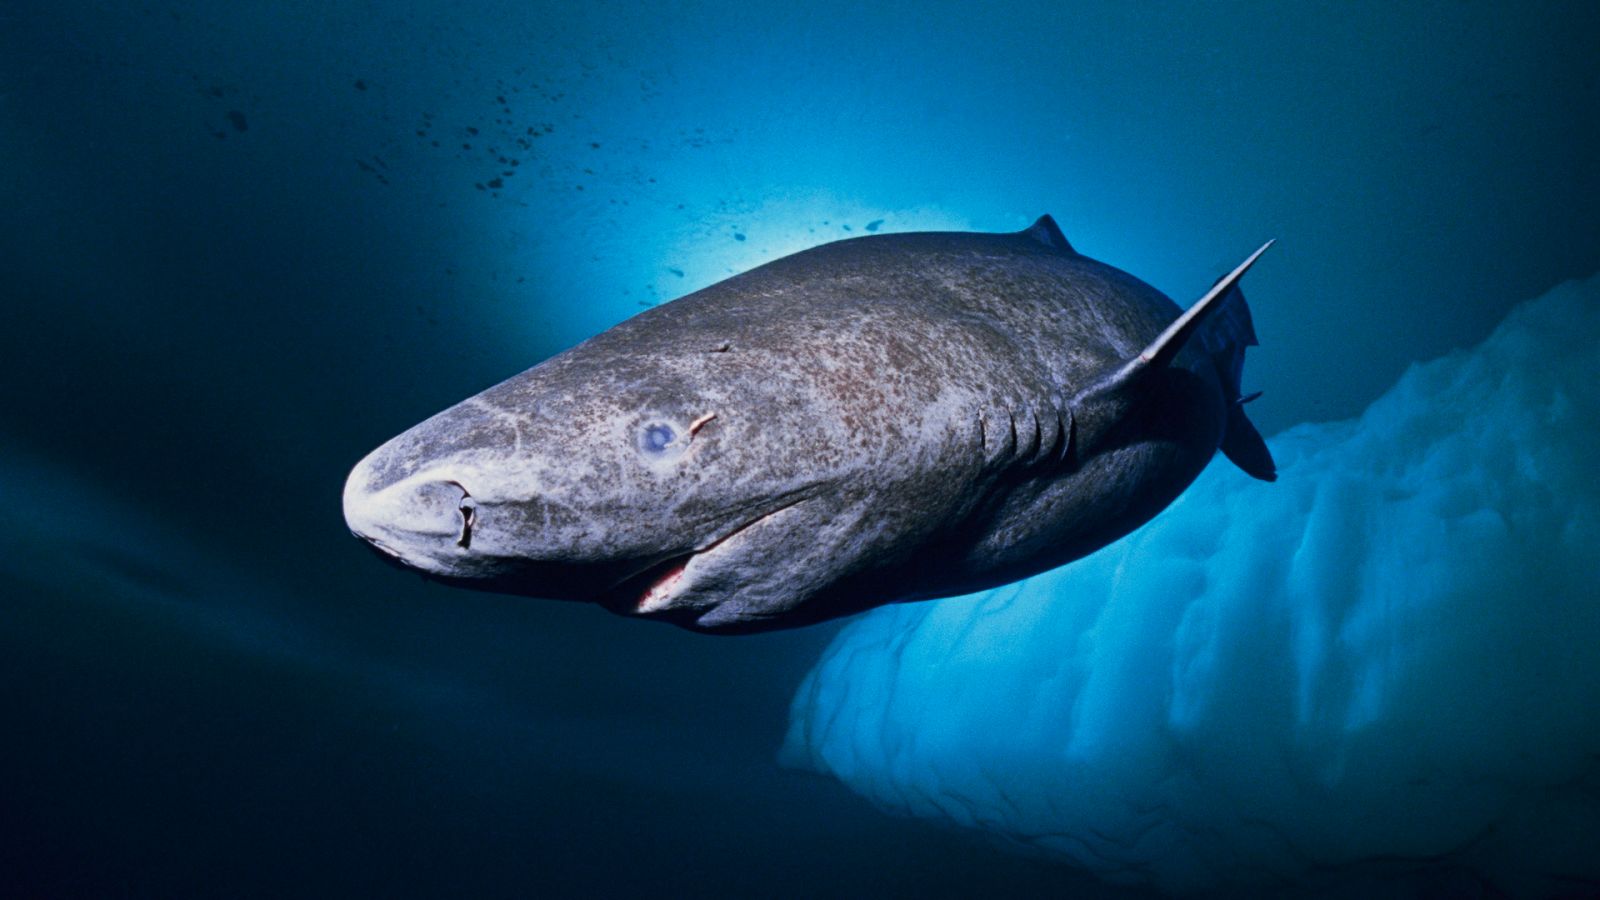 Tiburón de Groenlandia y su longevidad - Fundación Aquae